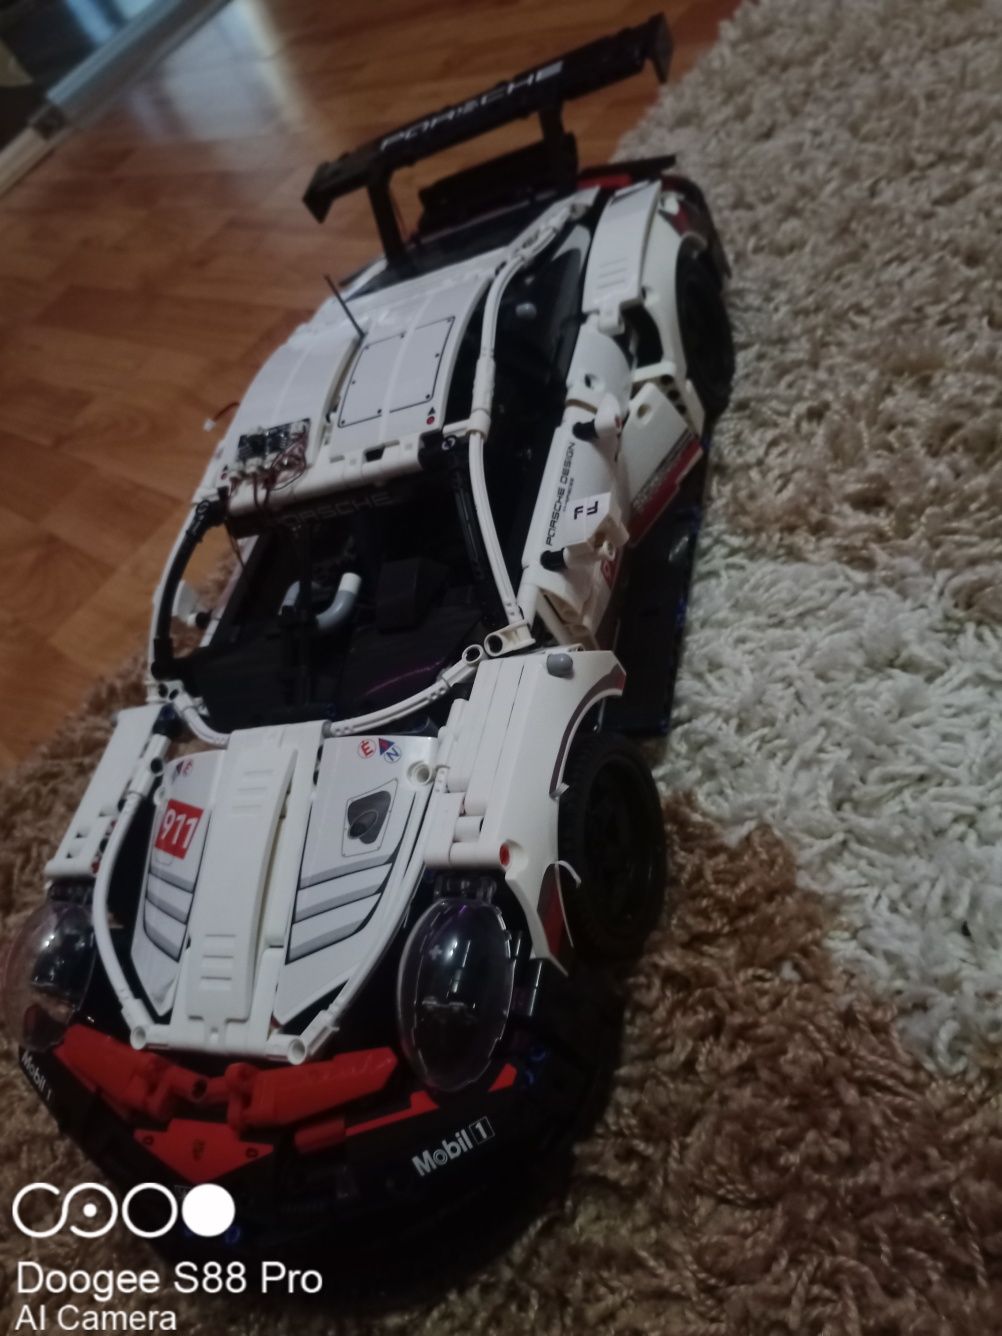 Lego tehnic Porsche 911